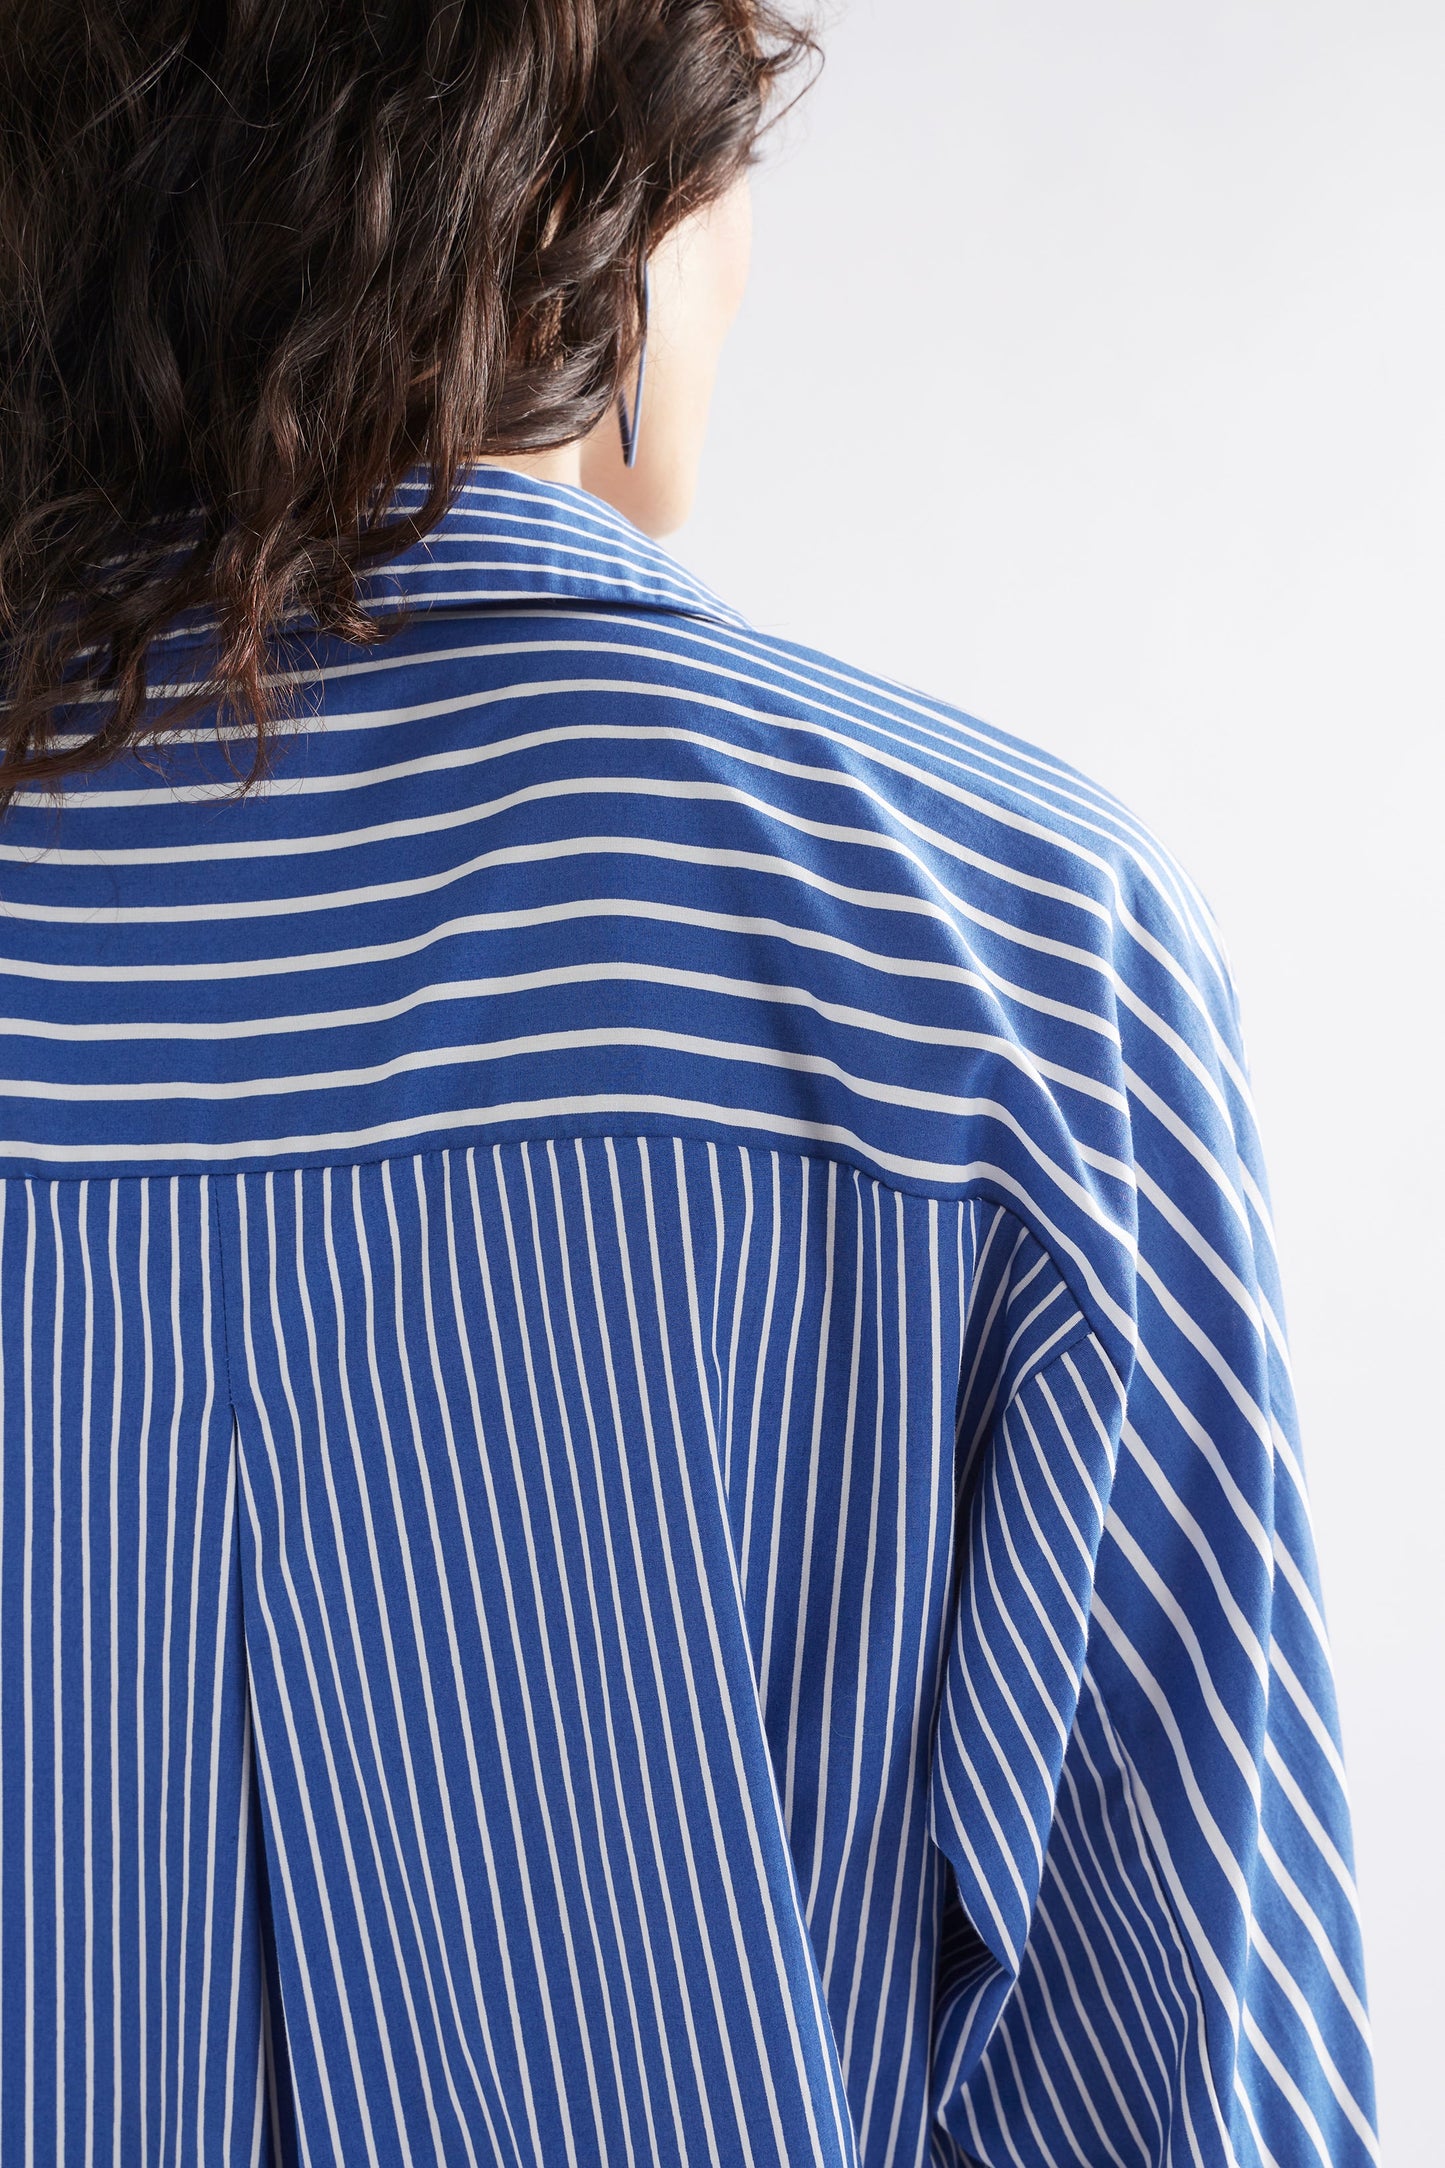 Ligne Relaxed Cotton Stripe Shirt Model back detail | BLUE STRIPE